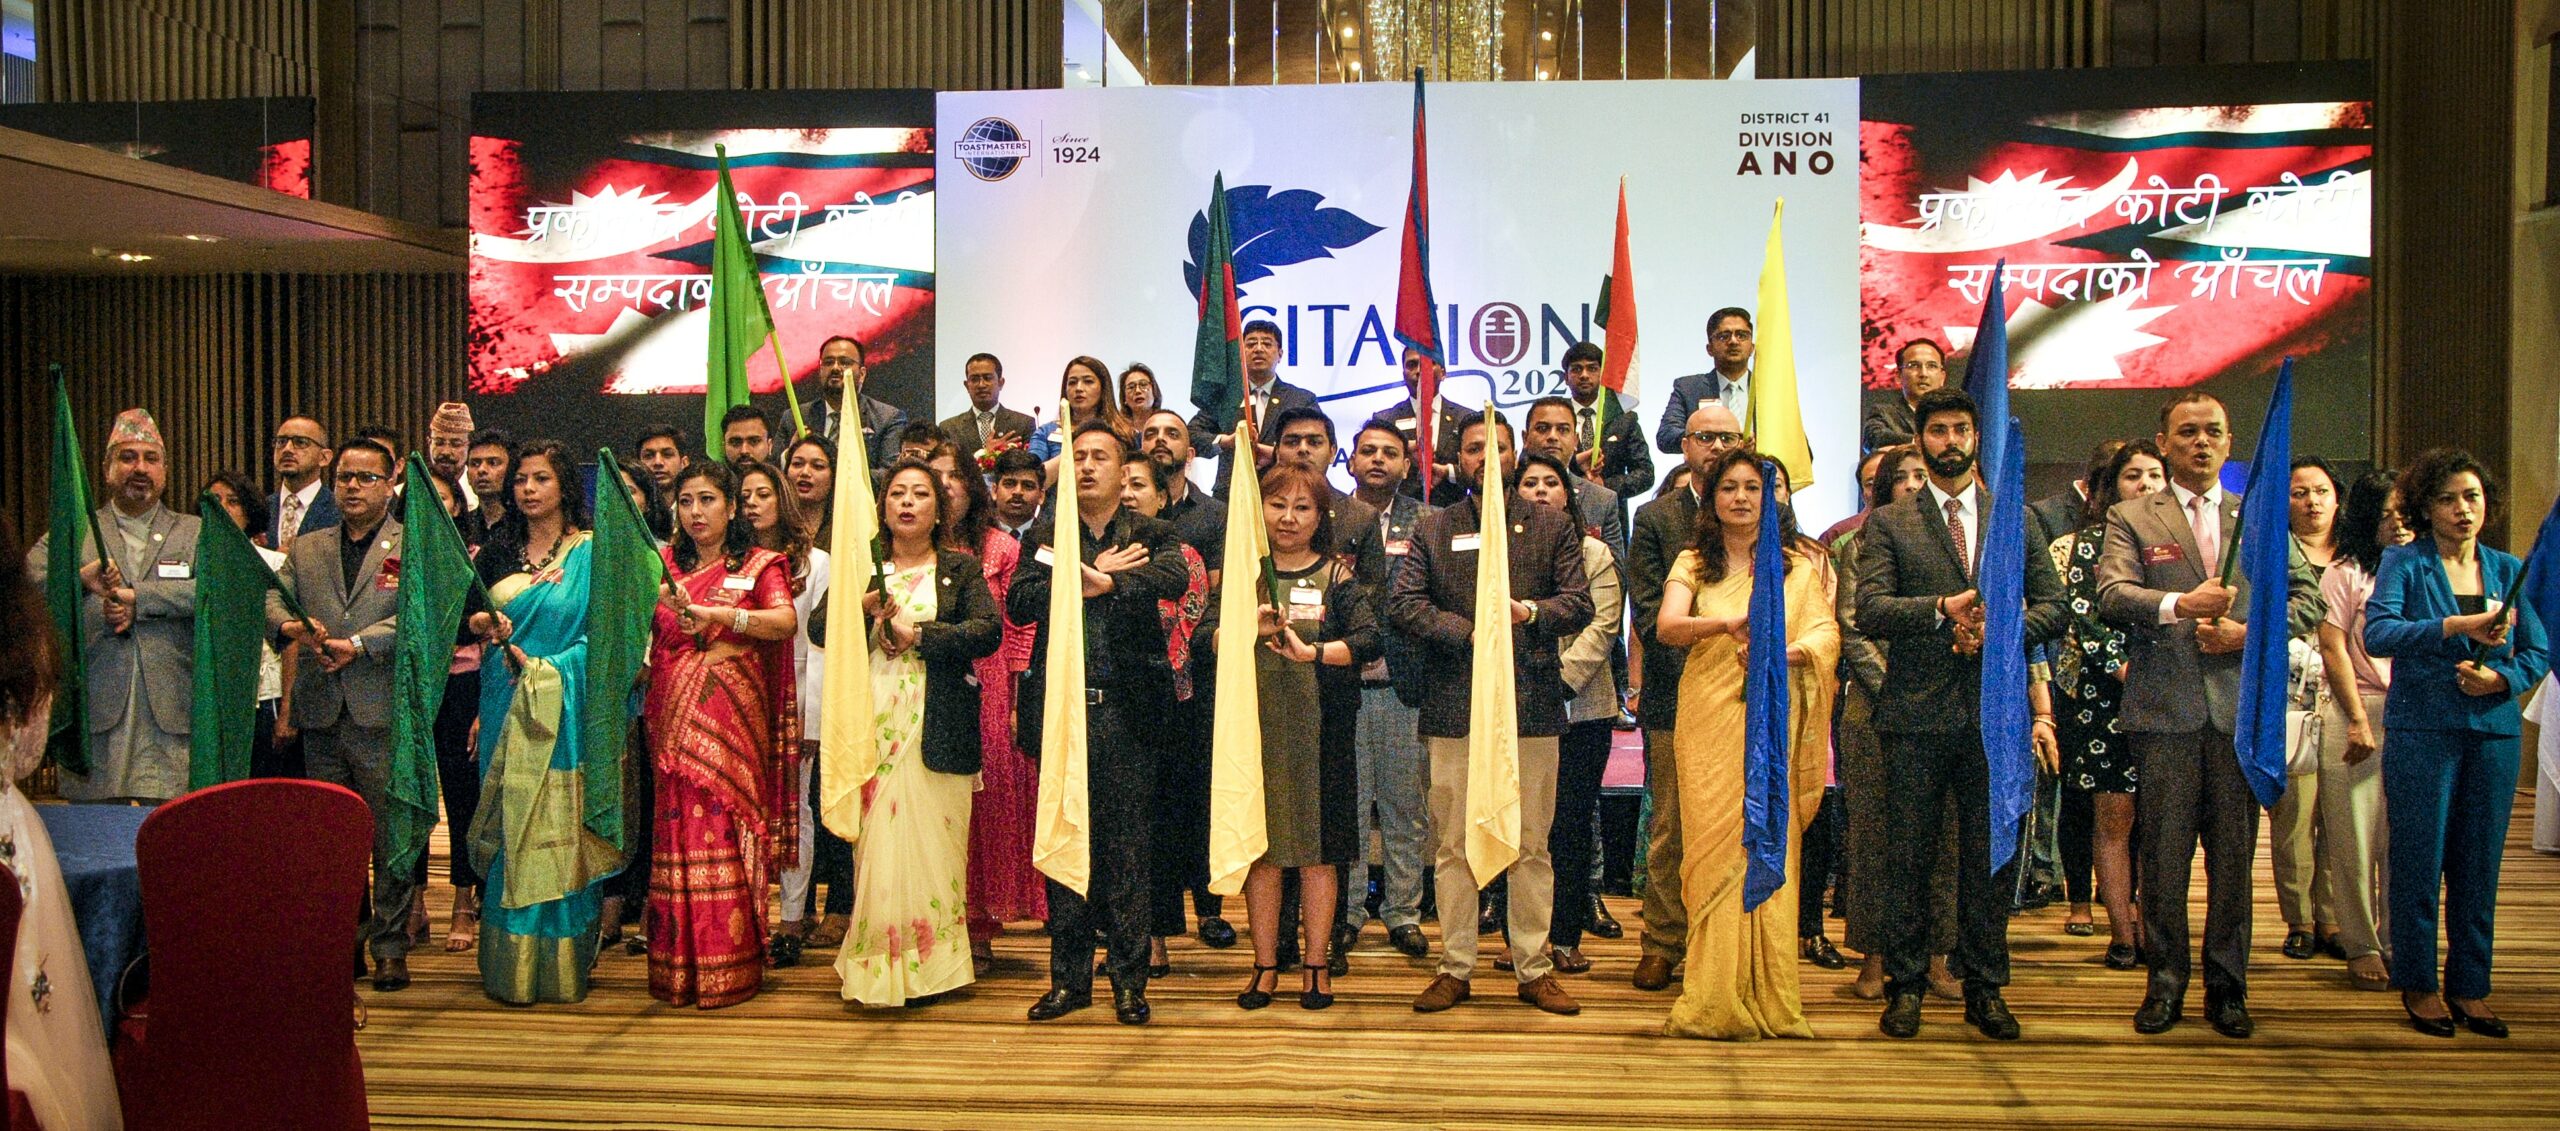 टोस्टमास्टर्स नेपालद्वारा आयोजित साइटेसन २०२२ सफलतापुर्वक सम्पन्न